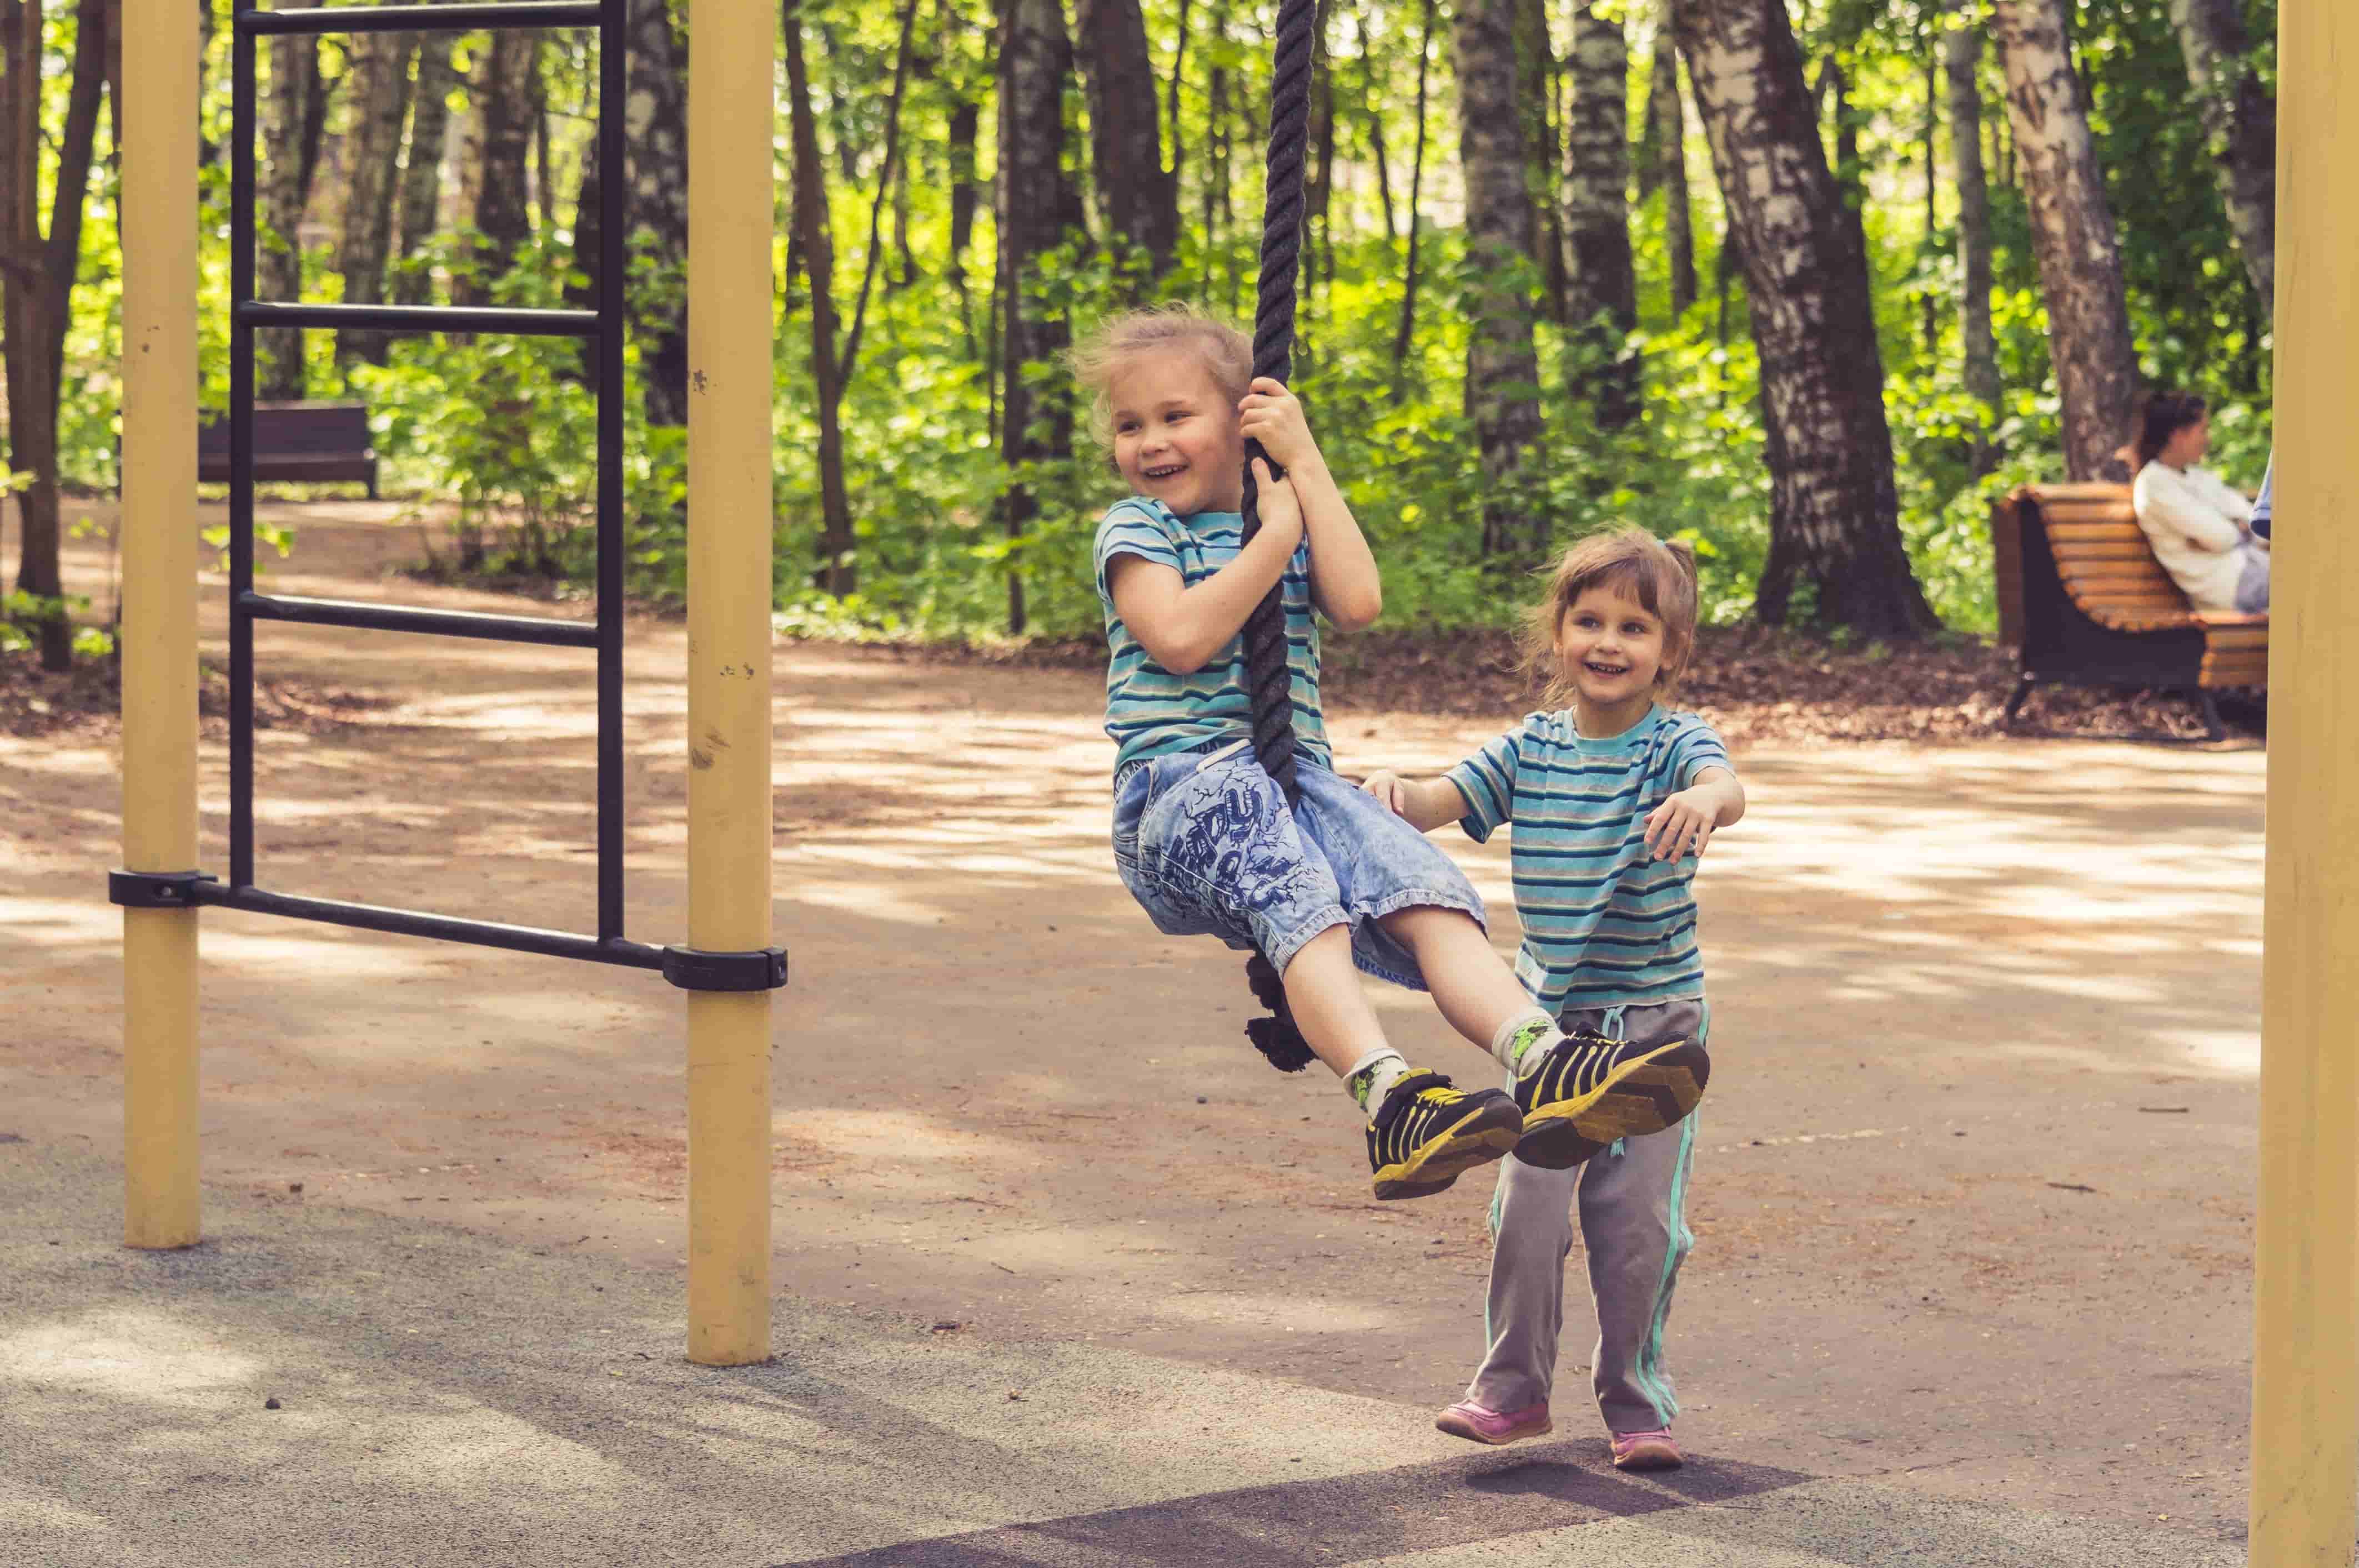 Kids playground near forest